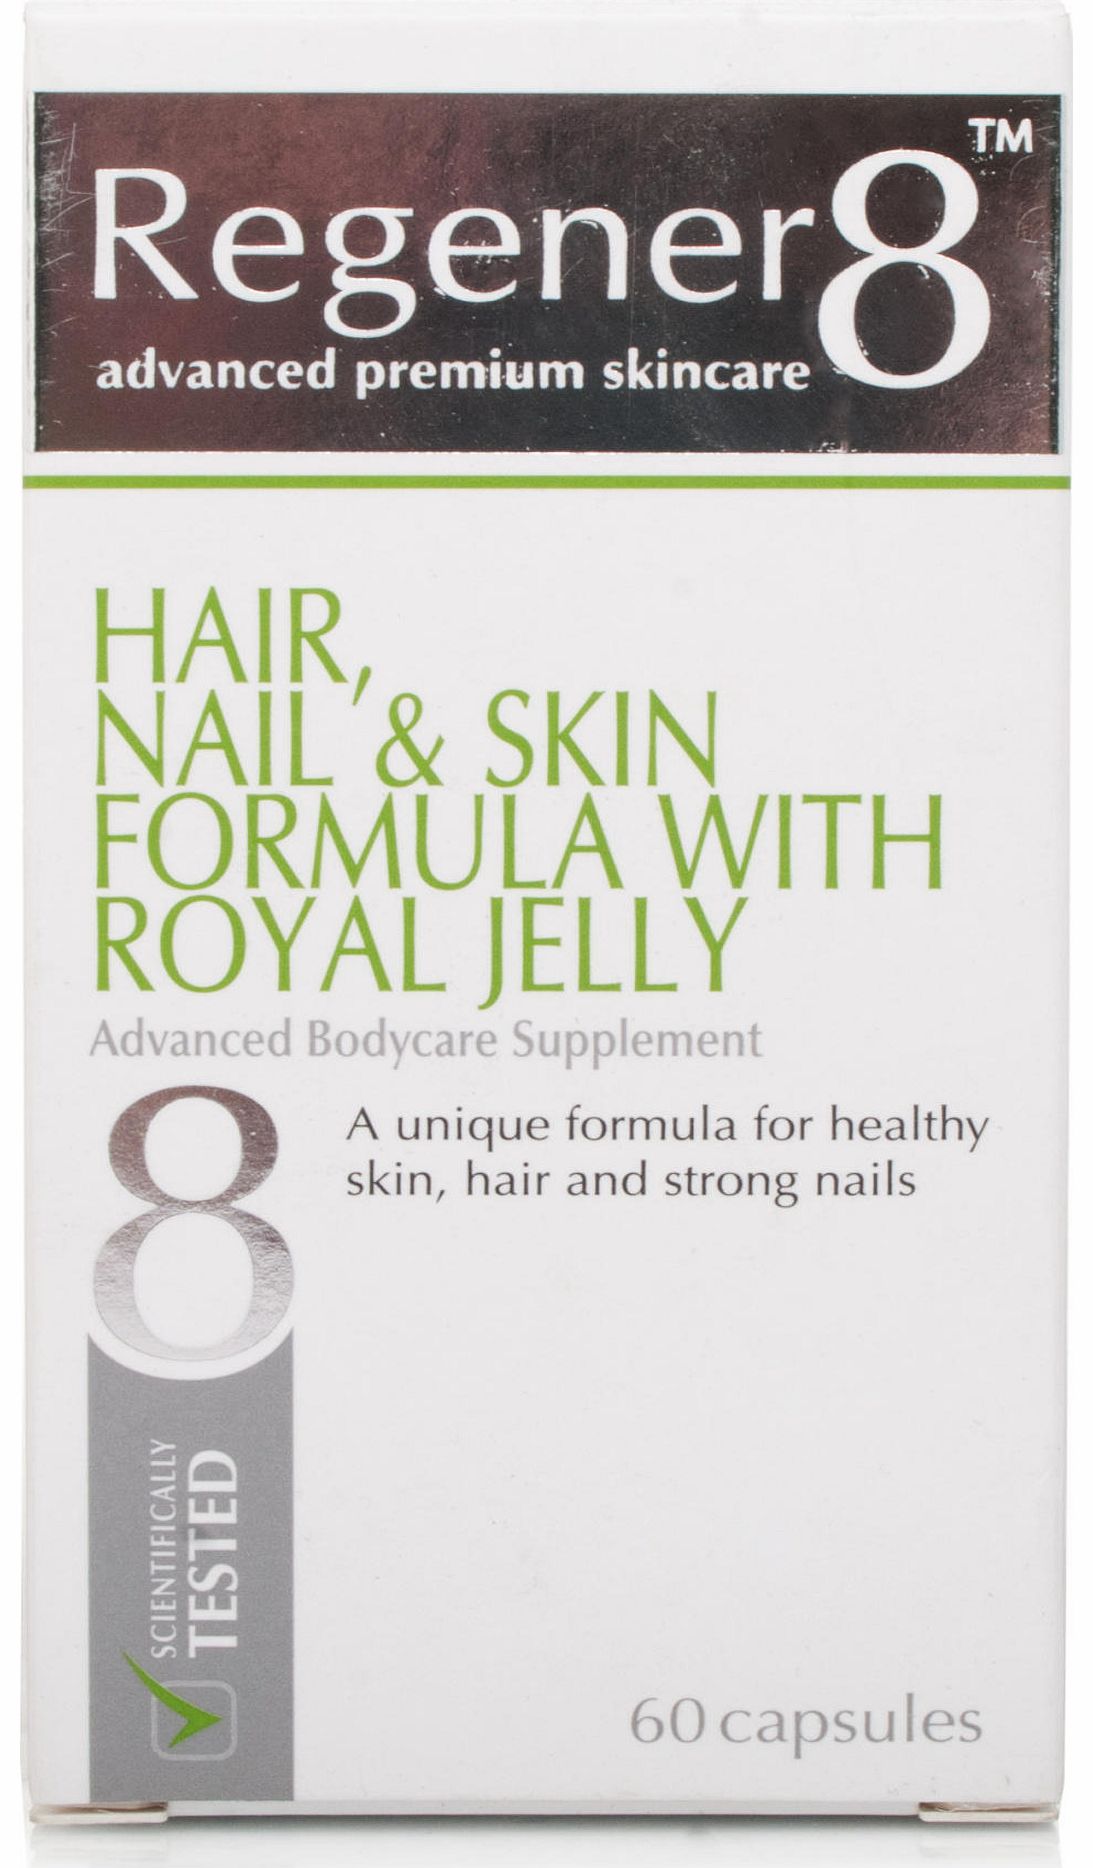 Bioconcepts Regener8 Hair Nail and Skin Formula with Royal